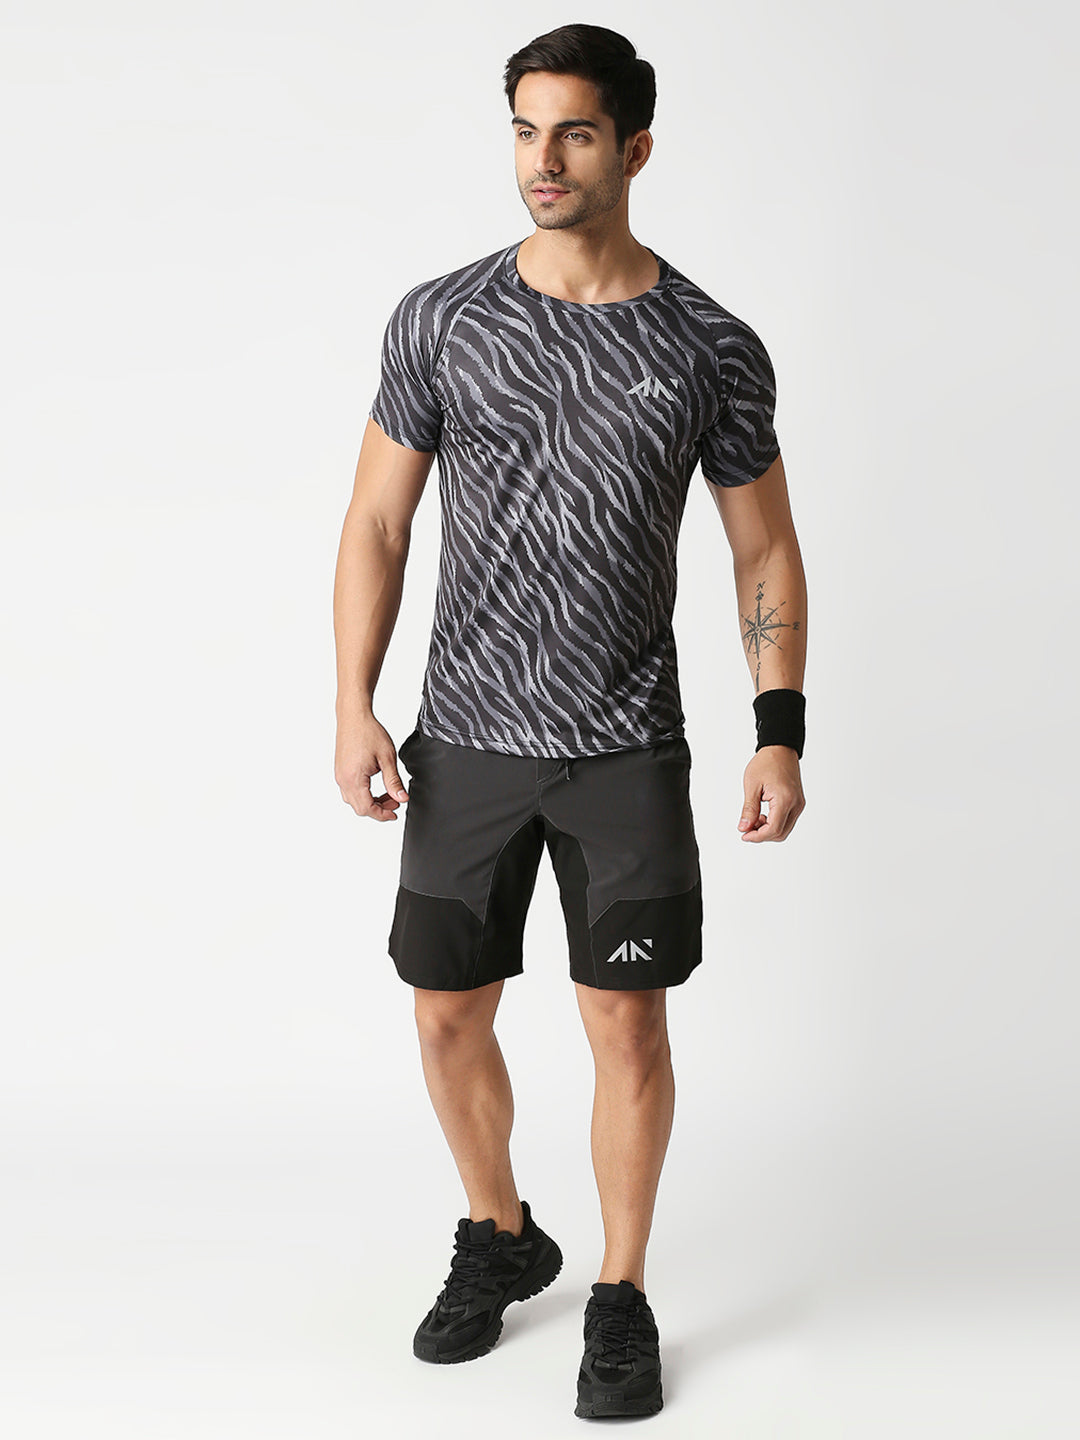 Dark Grey Training Shorts For Gym | Mens Shorts | Gym Wear For Men ...